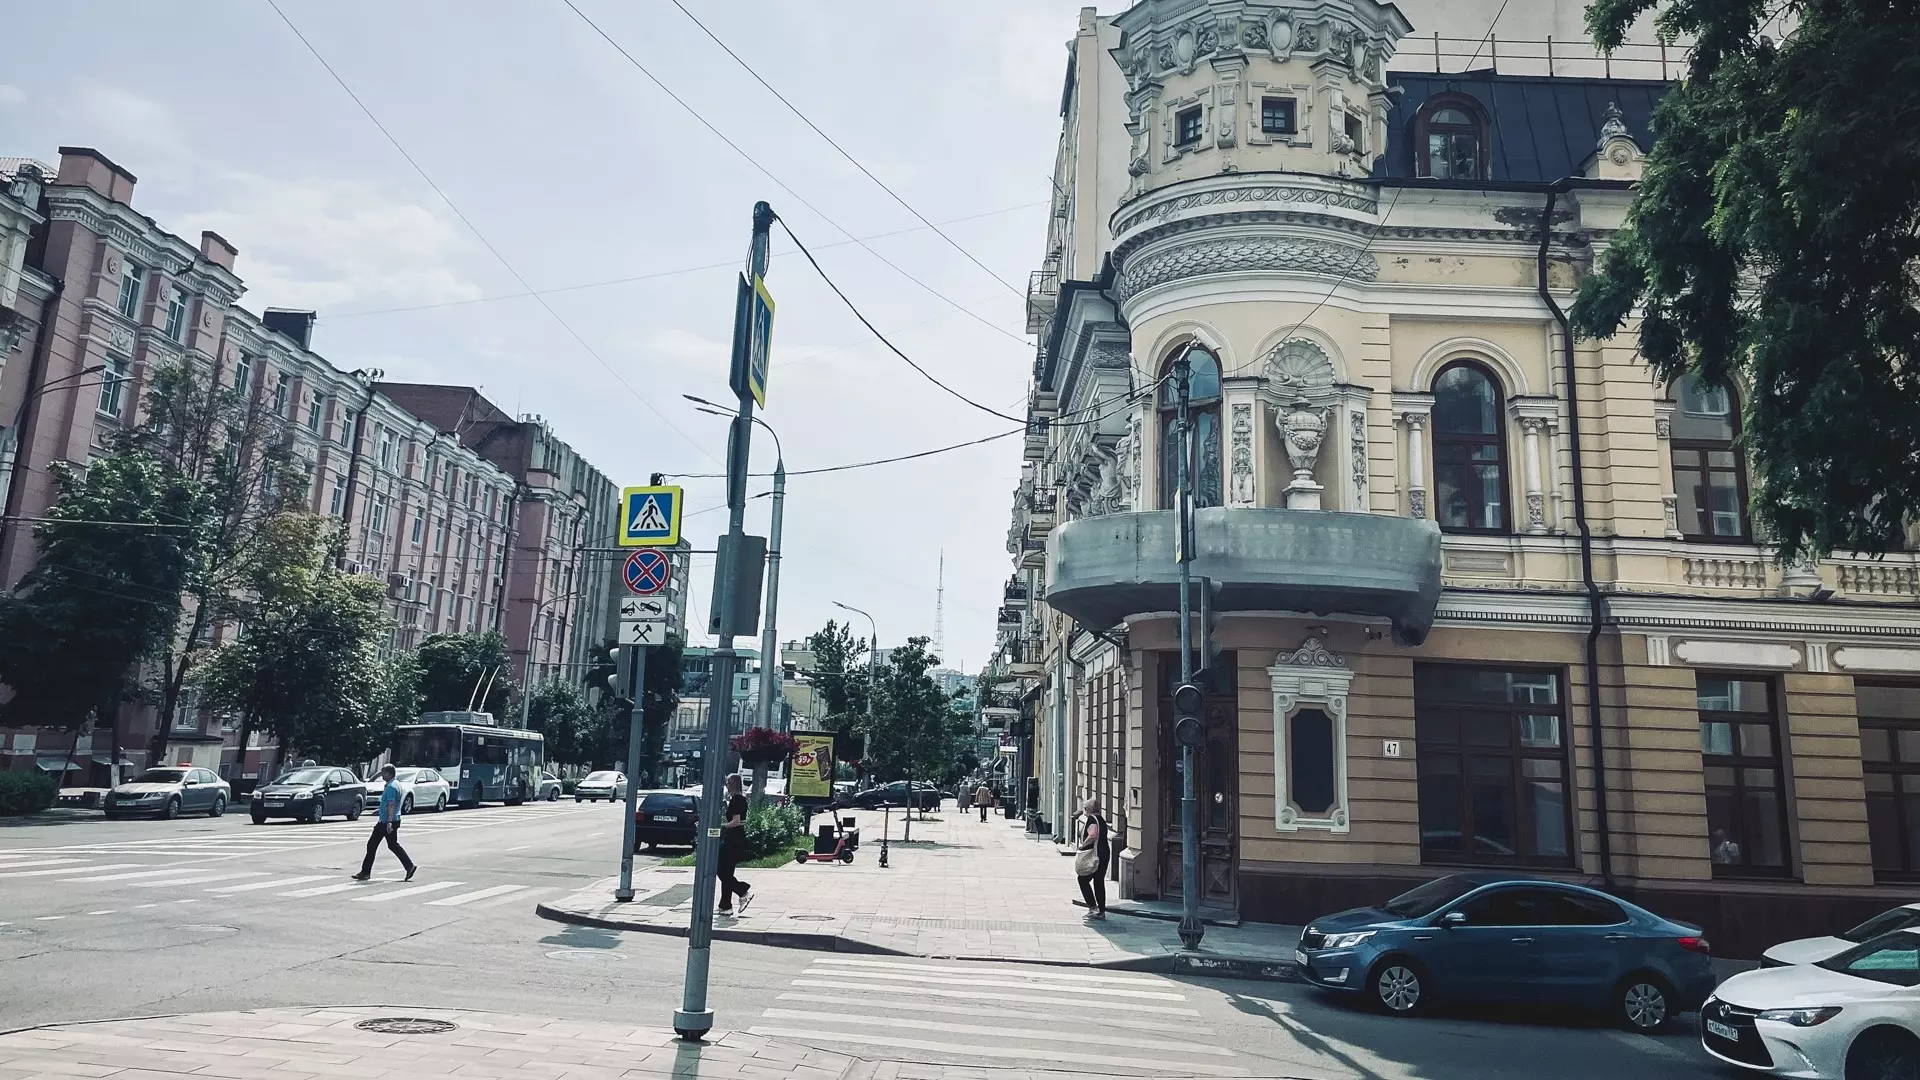 Урбанист Зайцев и актер Жигунов раскритиковали архитектуру Ростова